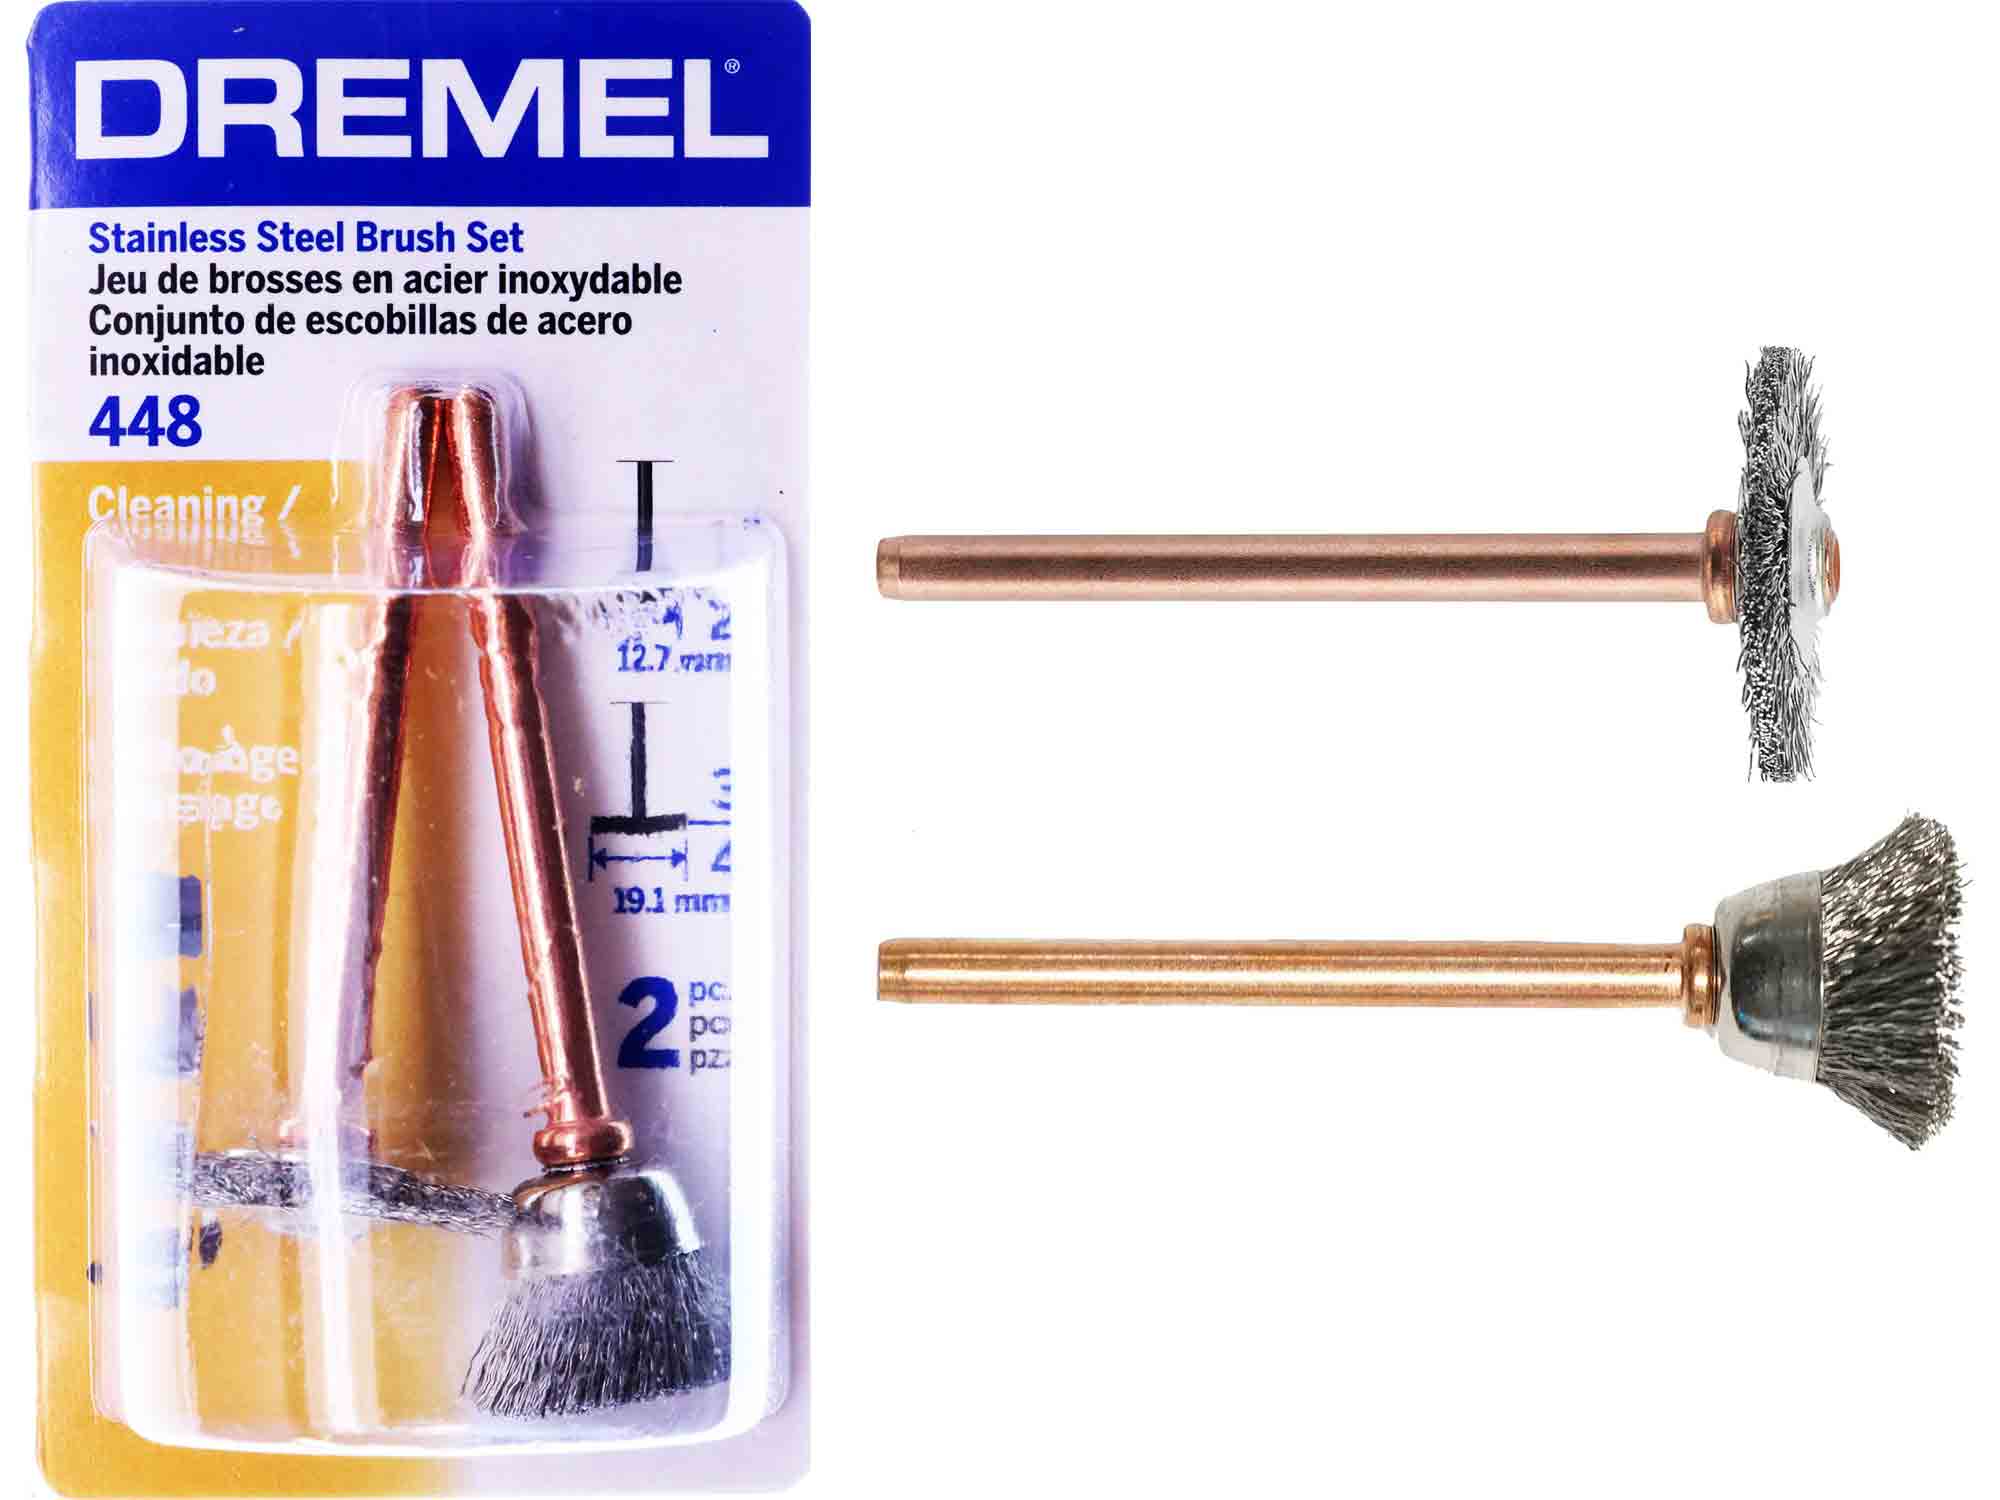 Dremel 448 Stainless Steel Brush Set - 2pc